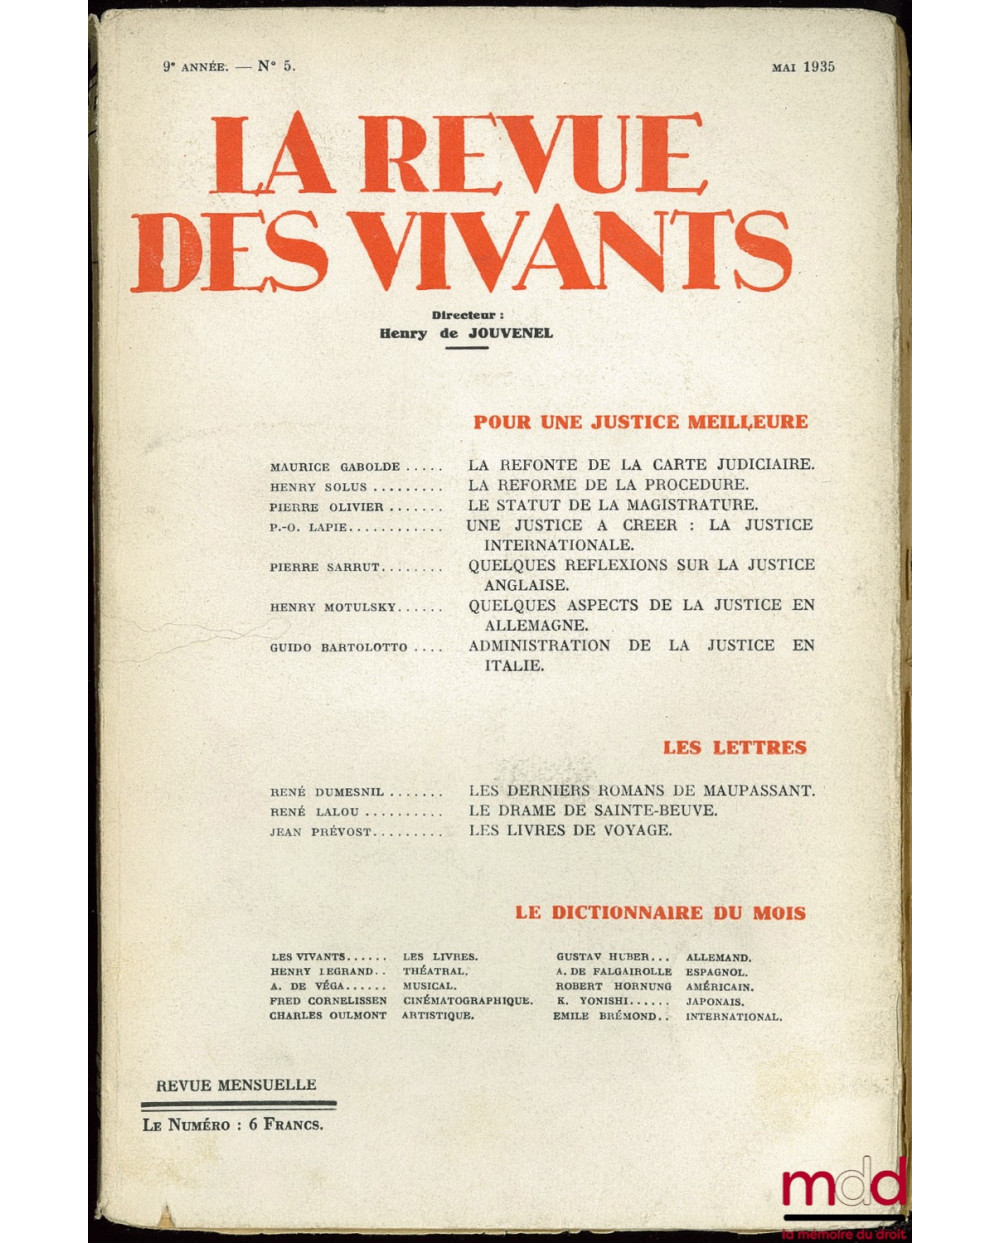 LA REVUE DES VIVANTS, Mai 1935